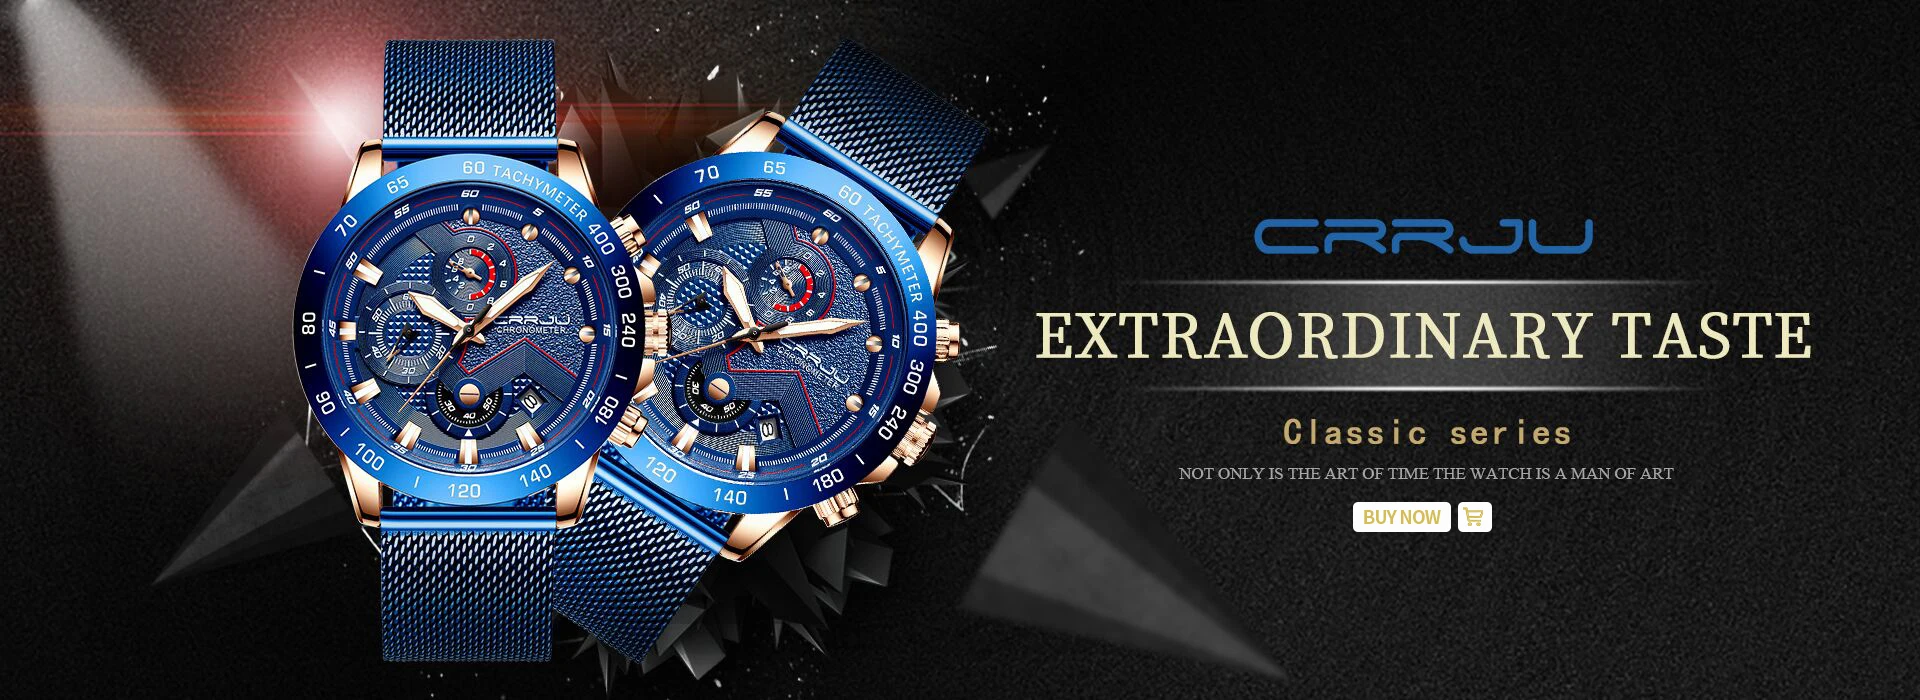 CRRJU спортивные часы с хронографом, минималистичные повседневные Стальные наручные часы, мужские Модные спортивные водонепроницаемые часы с синим ремешком, часы для мужчин